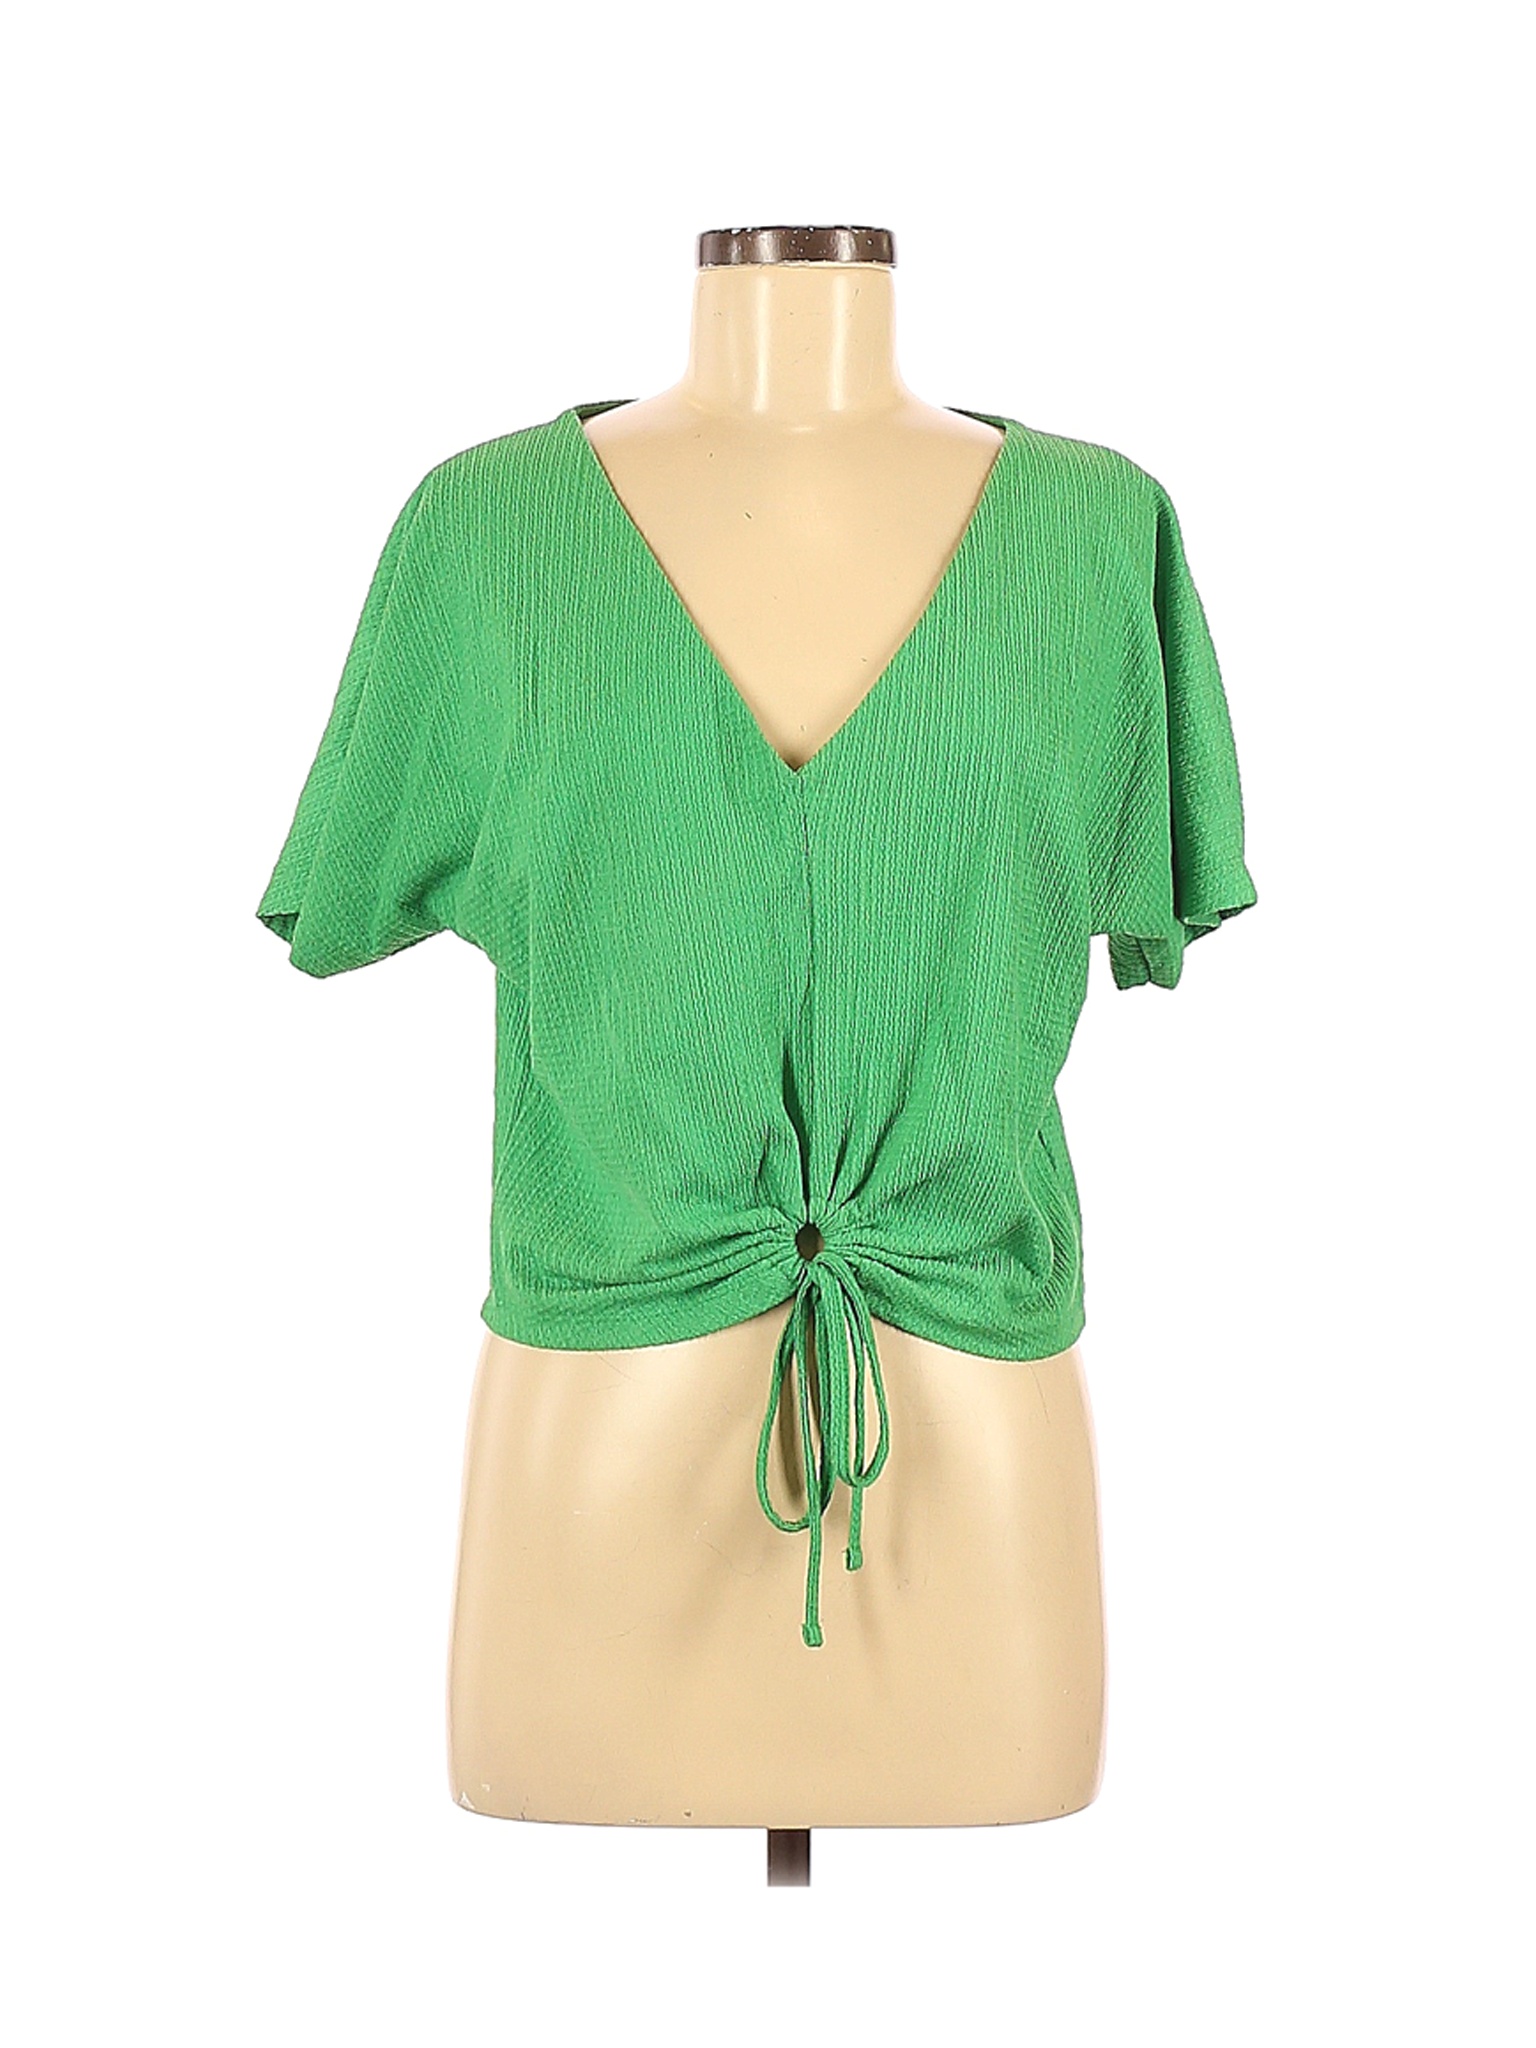 Zara Women Green Short Sleeve Top M | eBay